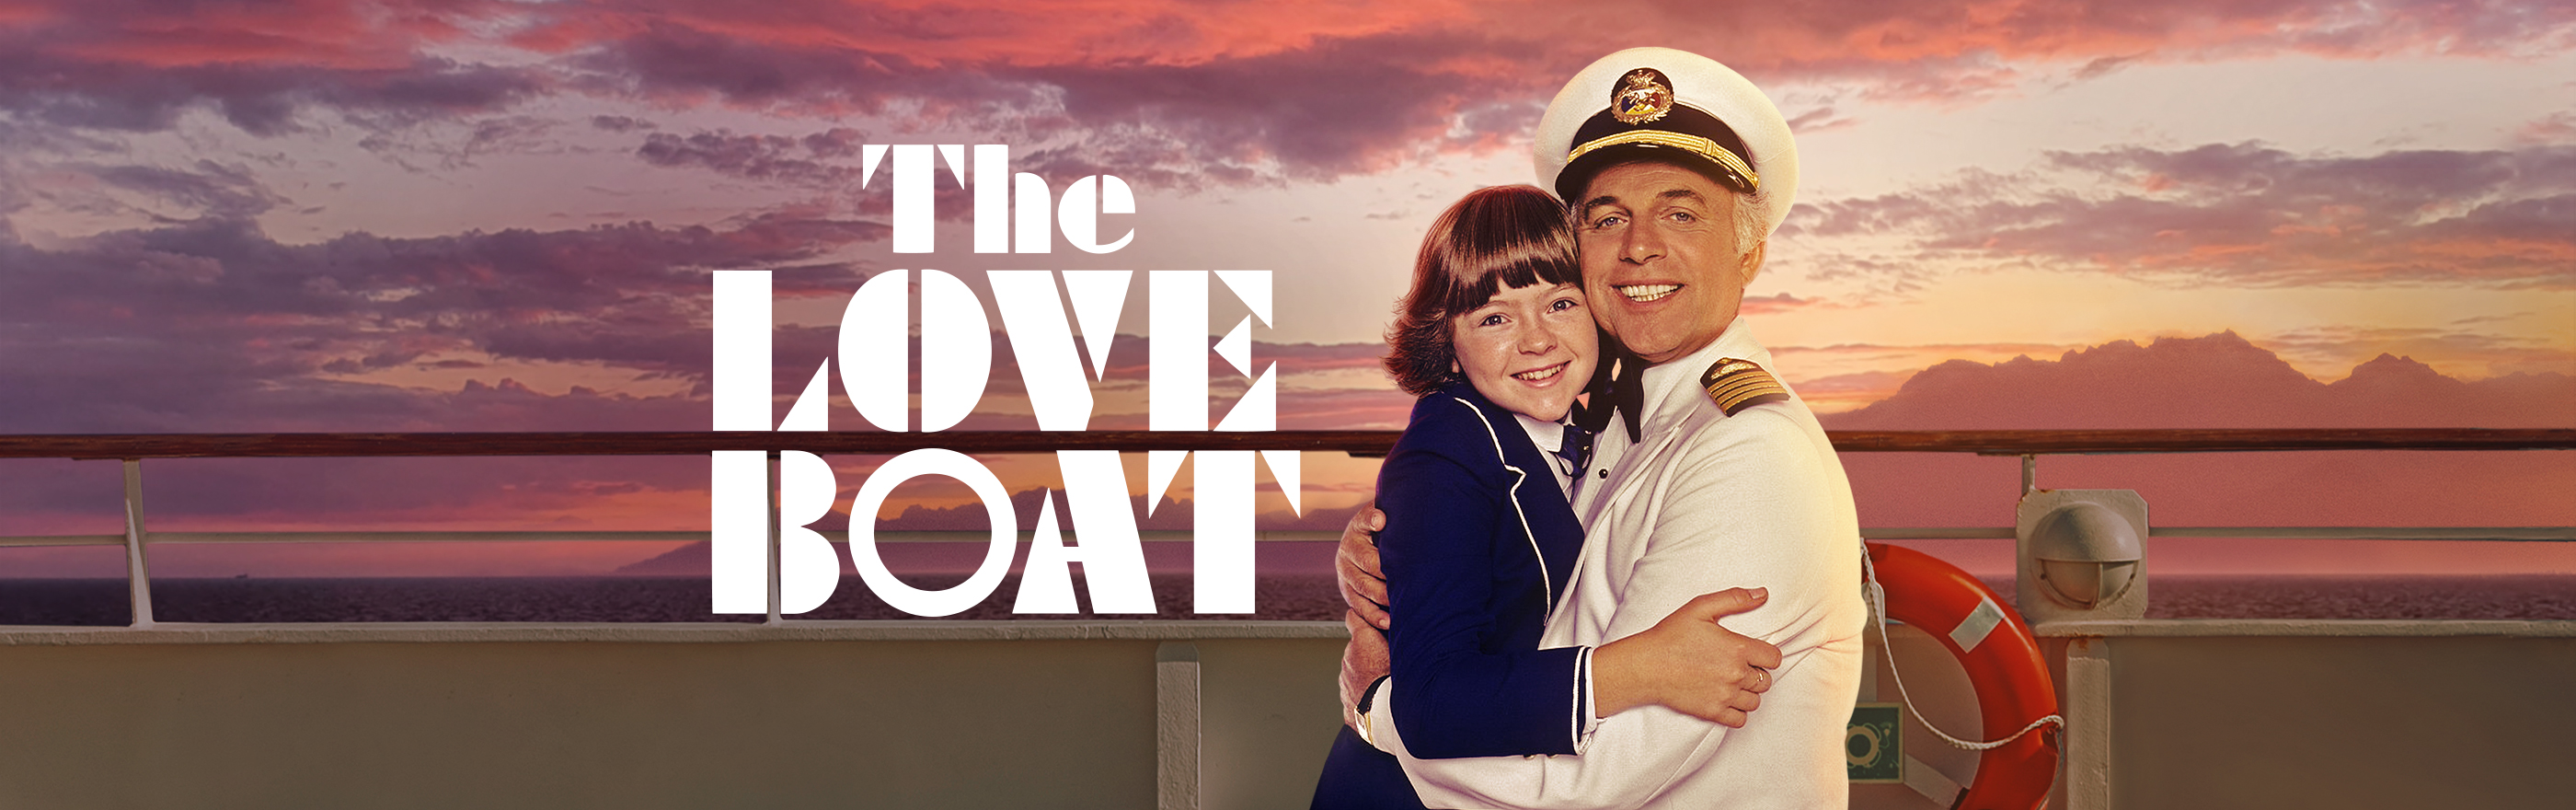 The Love Boat LOGO